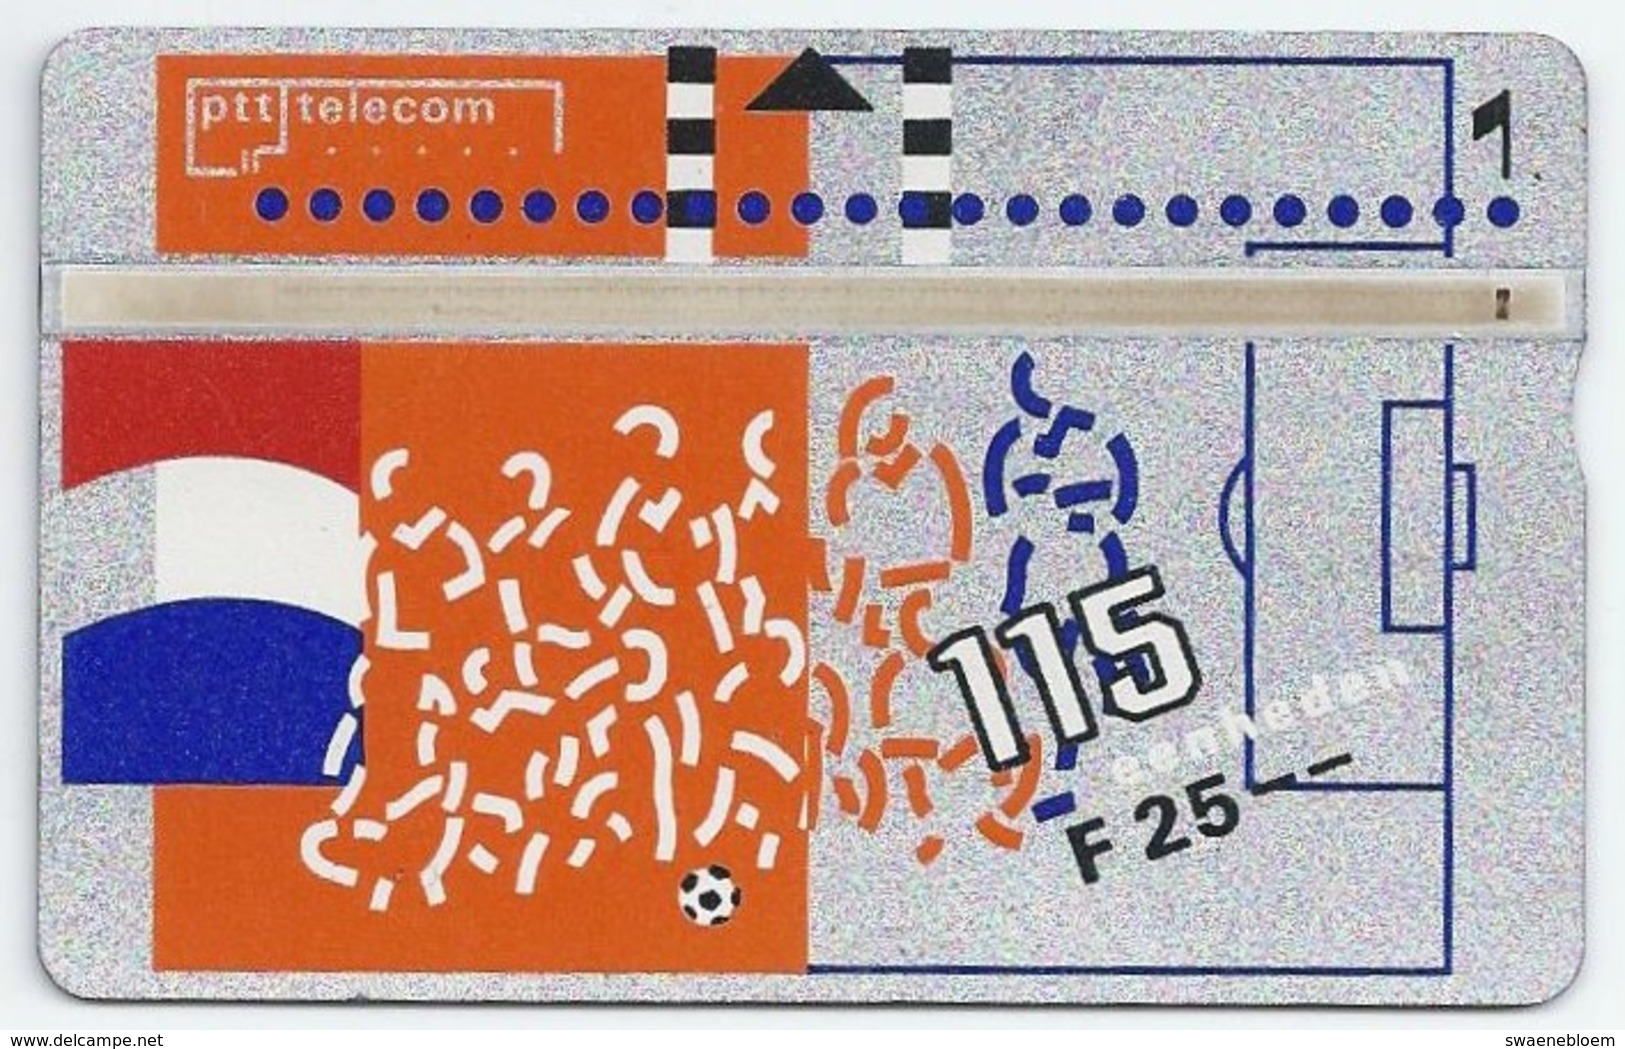 Telefoonkaart.- 131F. Nederland. PTT Telecom Is Officieel Sponsor Van De KNVB. Voetbal. Vlag. 25 Gulden. 115 Eenheden. - Pubbliche